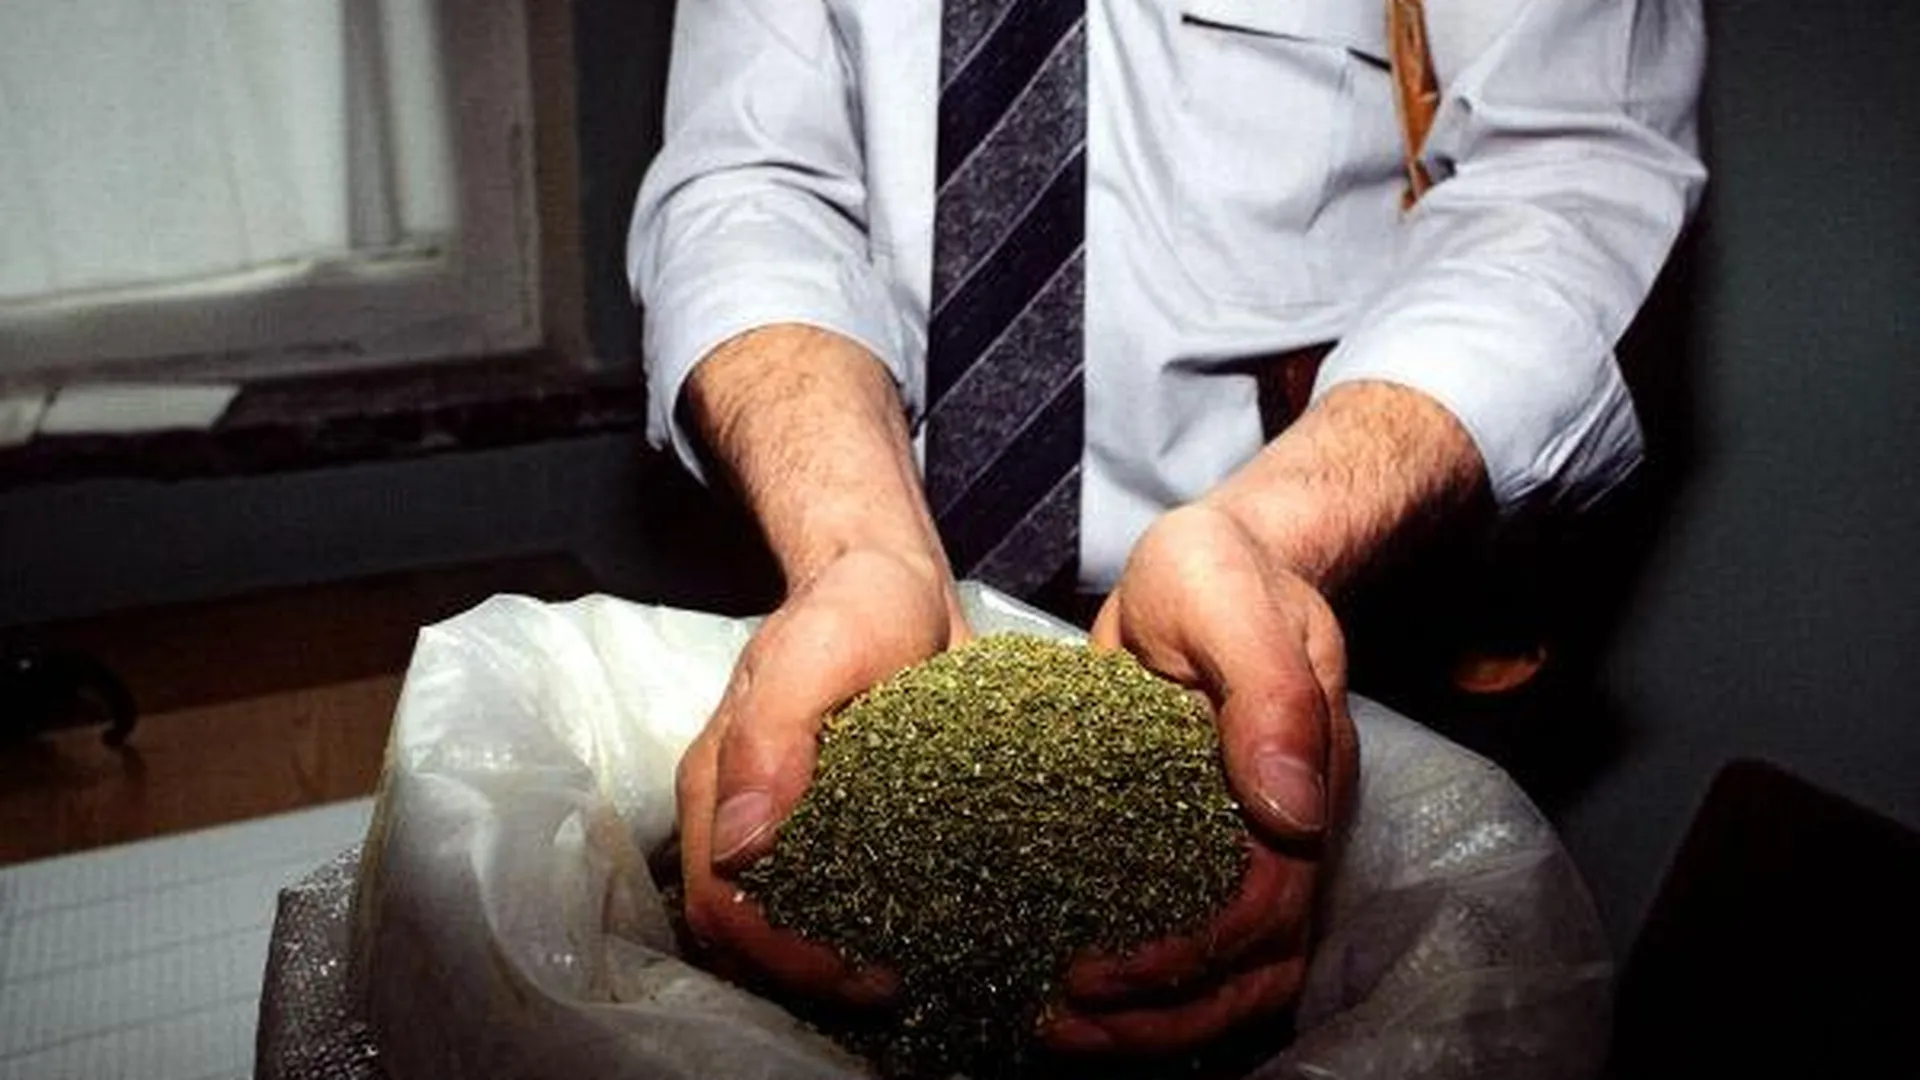 Около 20 кг марихуаны изъяли у членов преступной группировки в МО